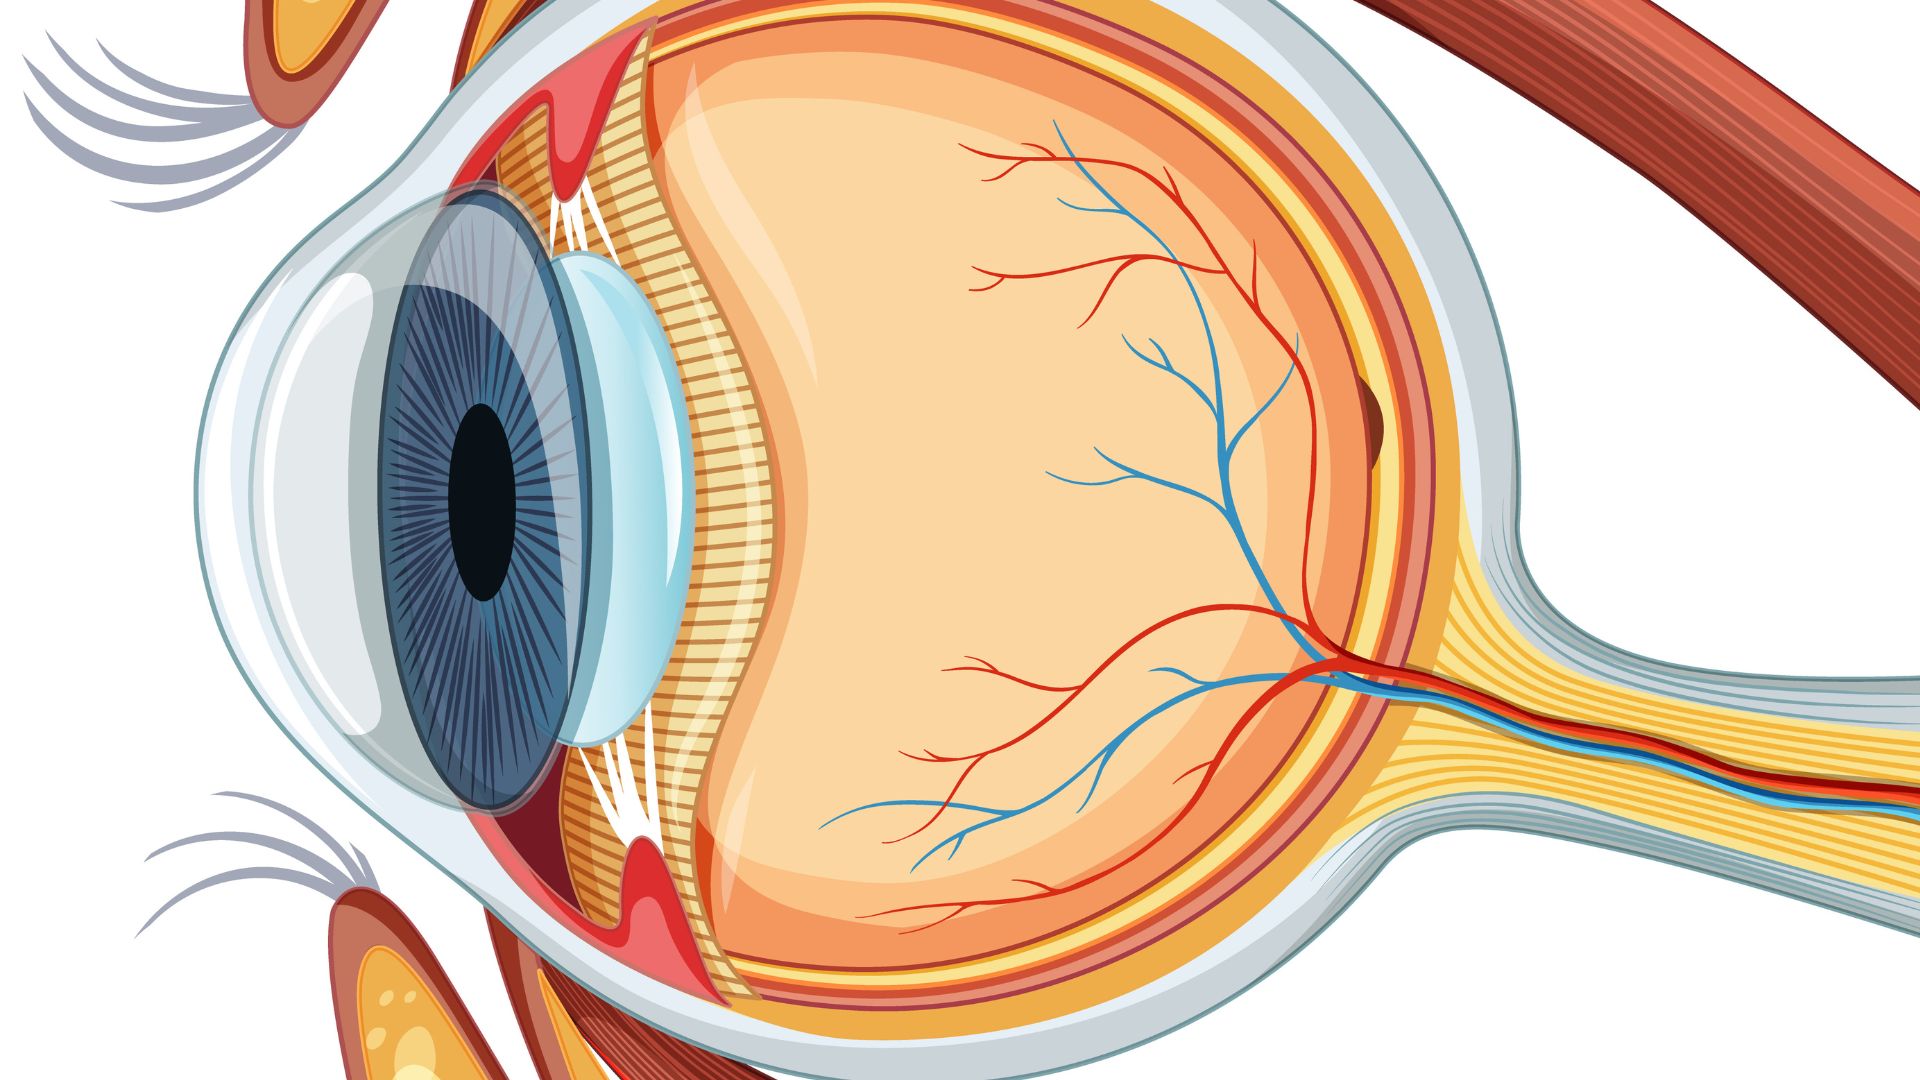 Conheça a anatomia do olho humano